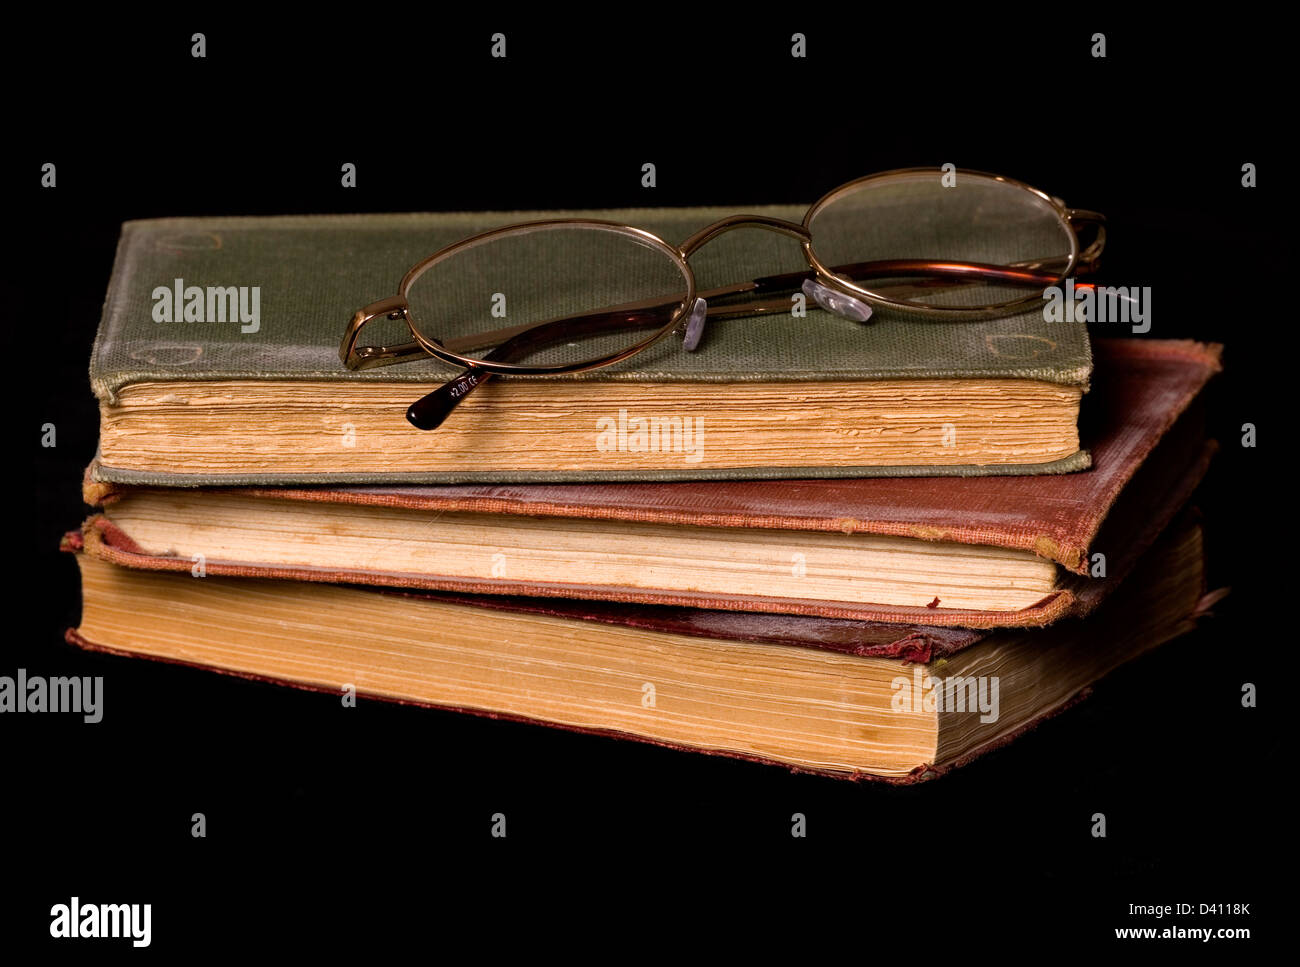 Libros antiguos y gafas de lectura sobre un fondo negro Foto de stock